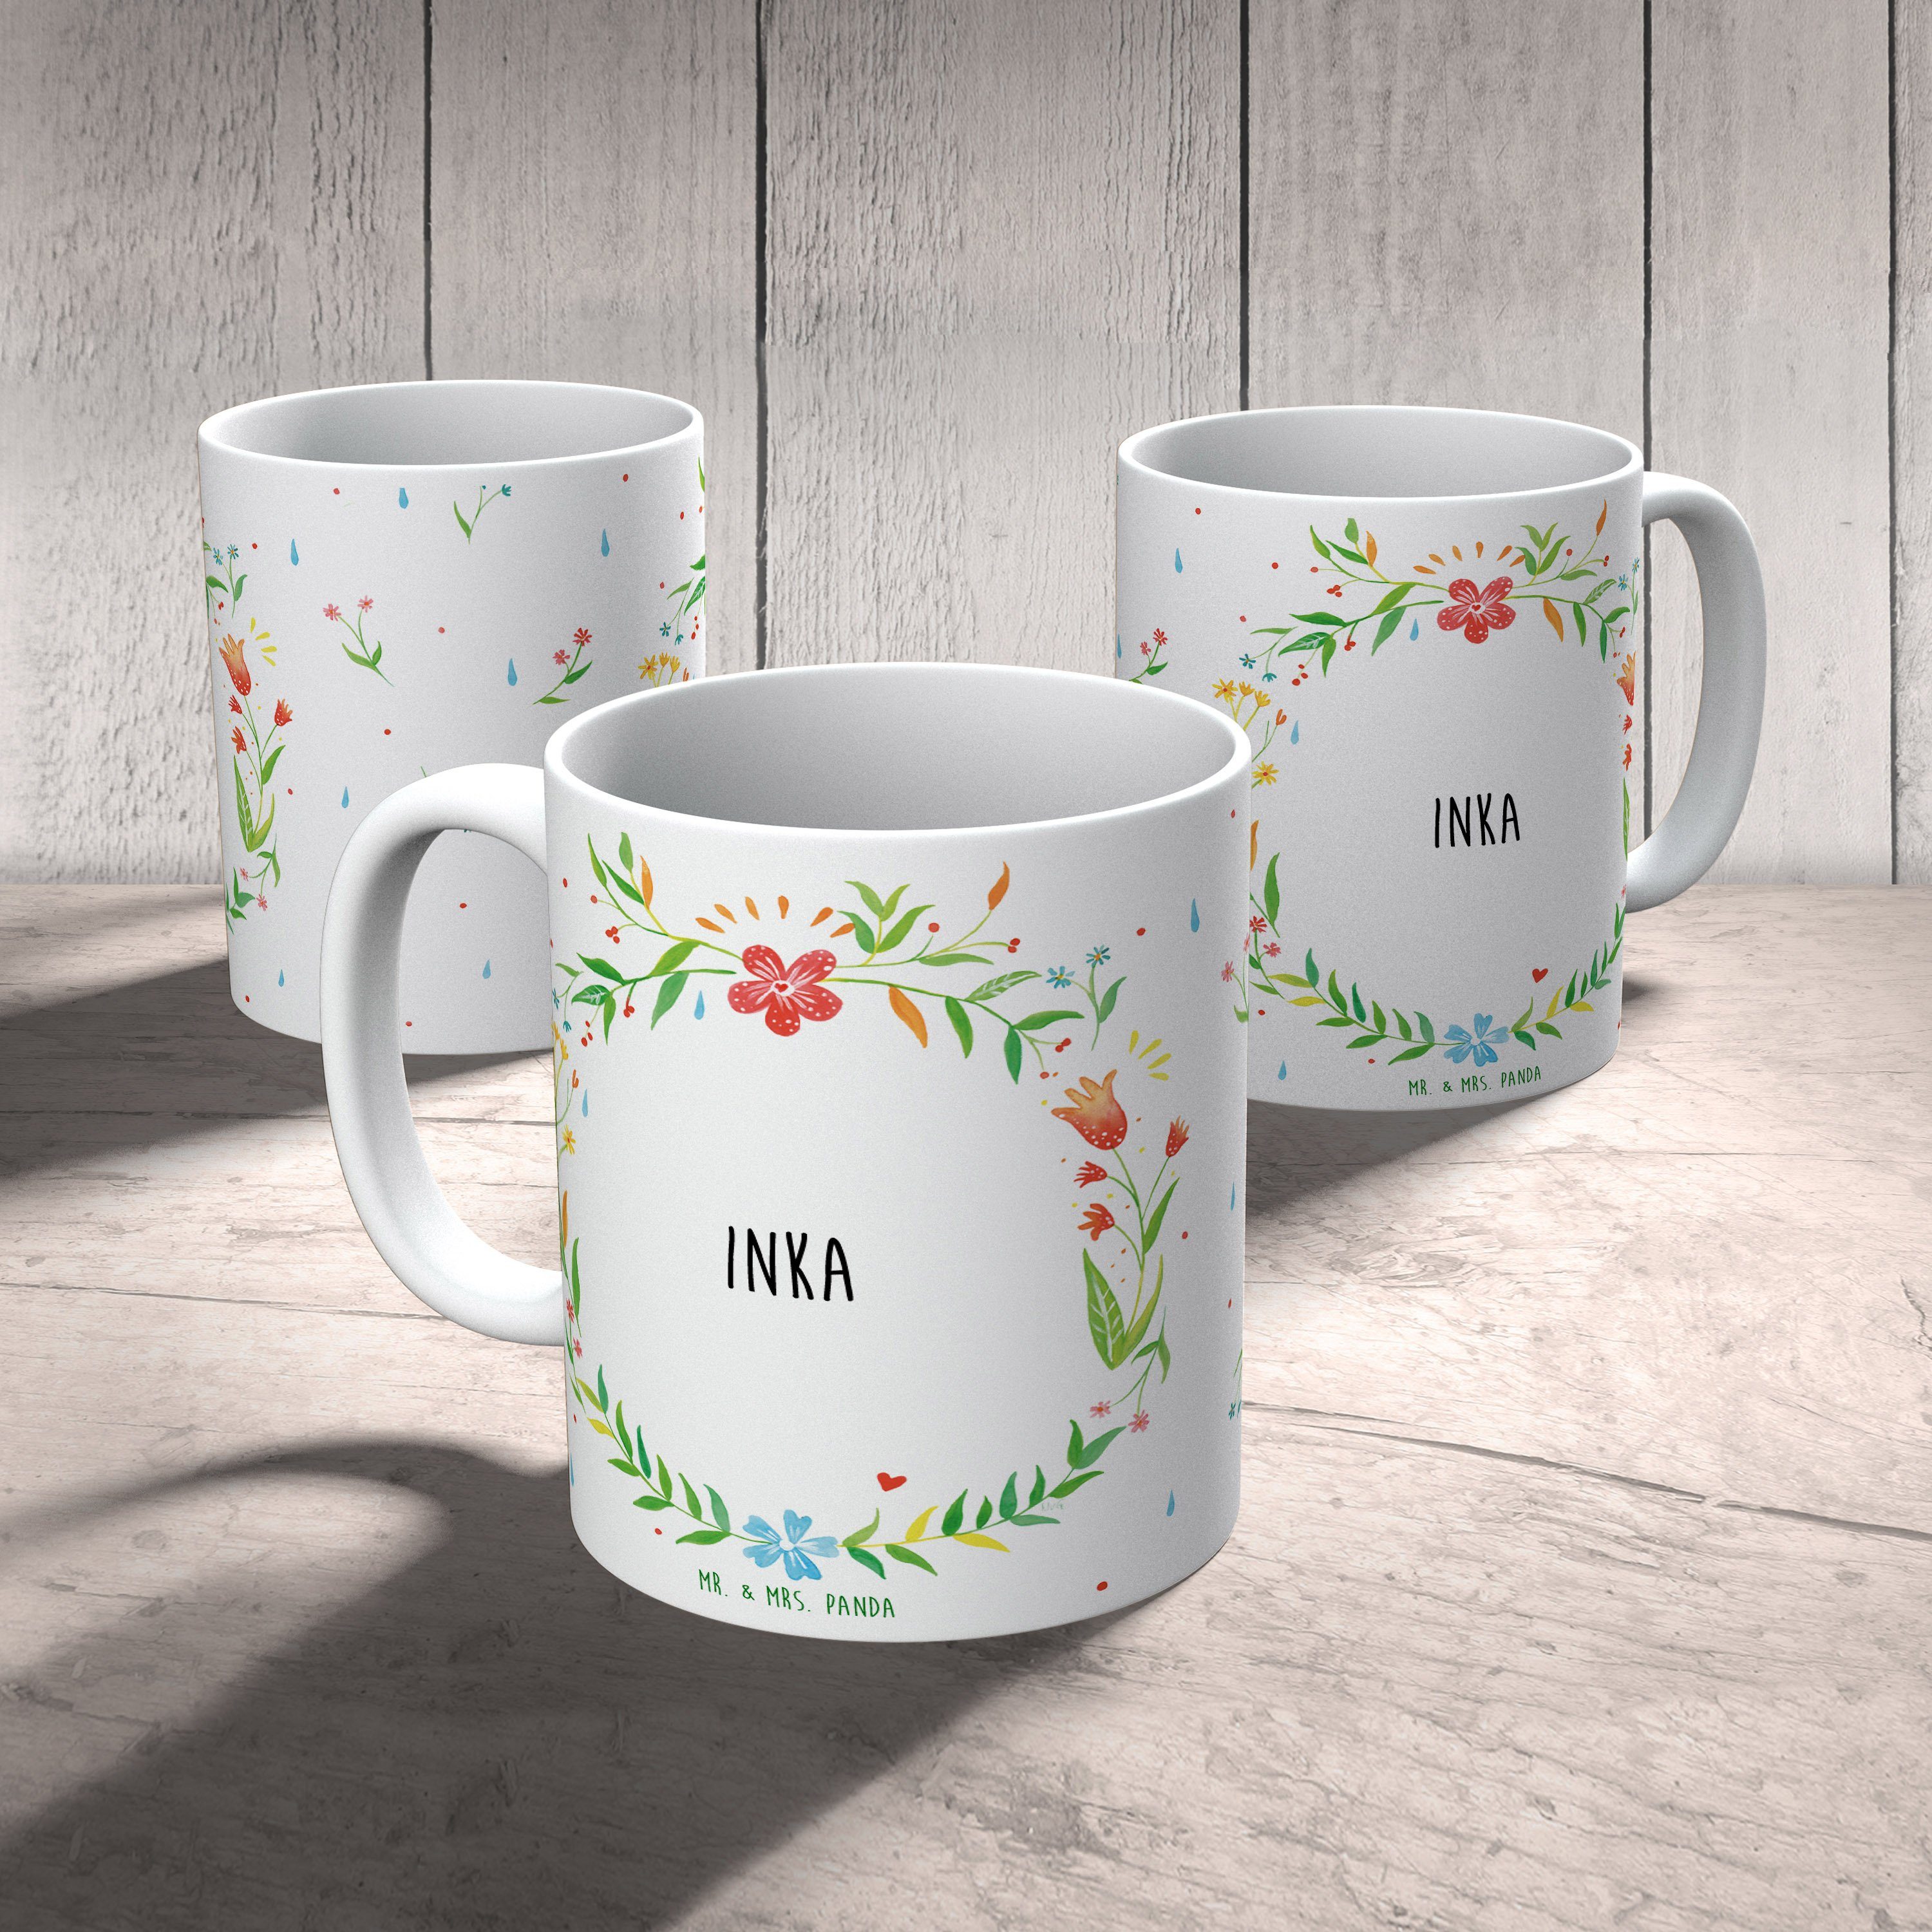 Inka Geschenk, Keramiktasse, & Panda Mr. - Mrs. Geschenk Keramik Kaffeebecher, Tasse Becher, Tasse,